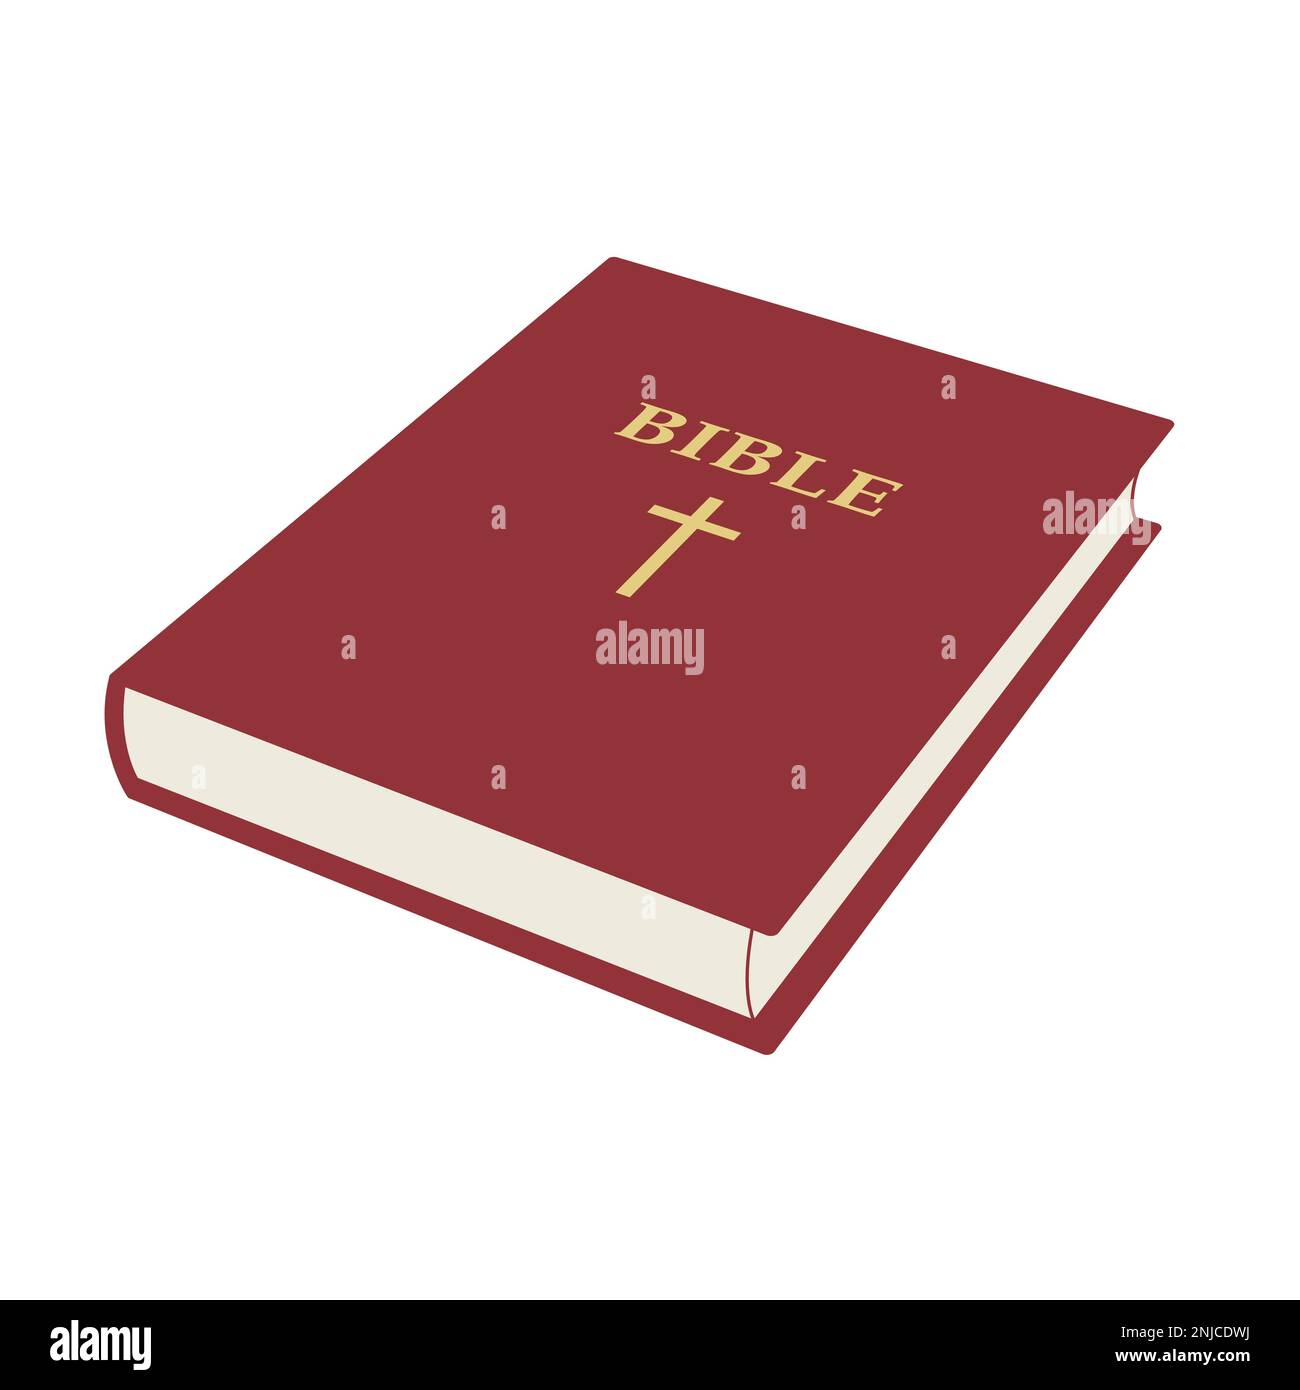 Heilige bibel - geschlossene Buchdarstellung isoliert auf Weiß Stock Vektor